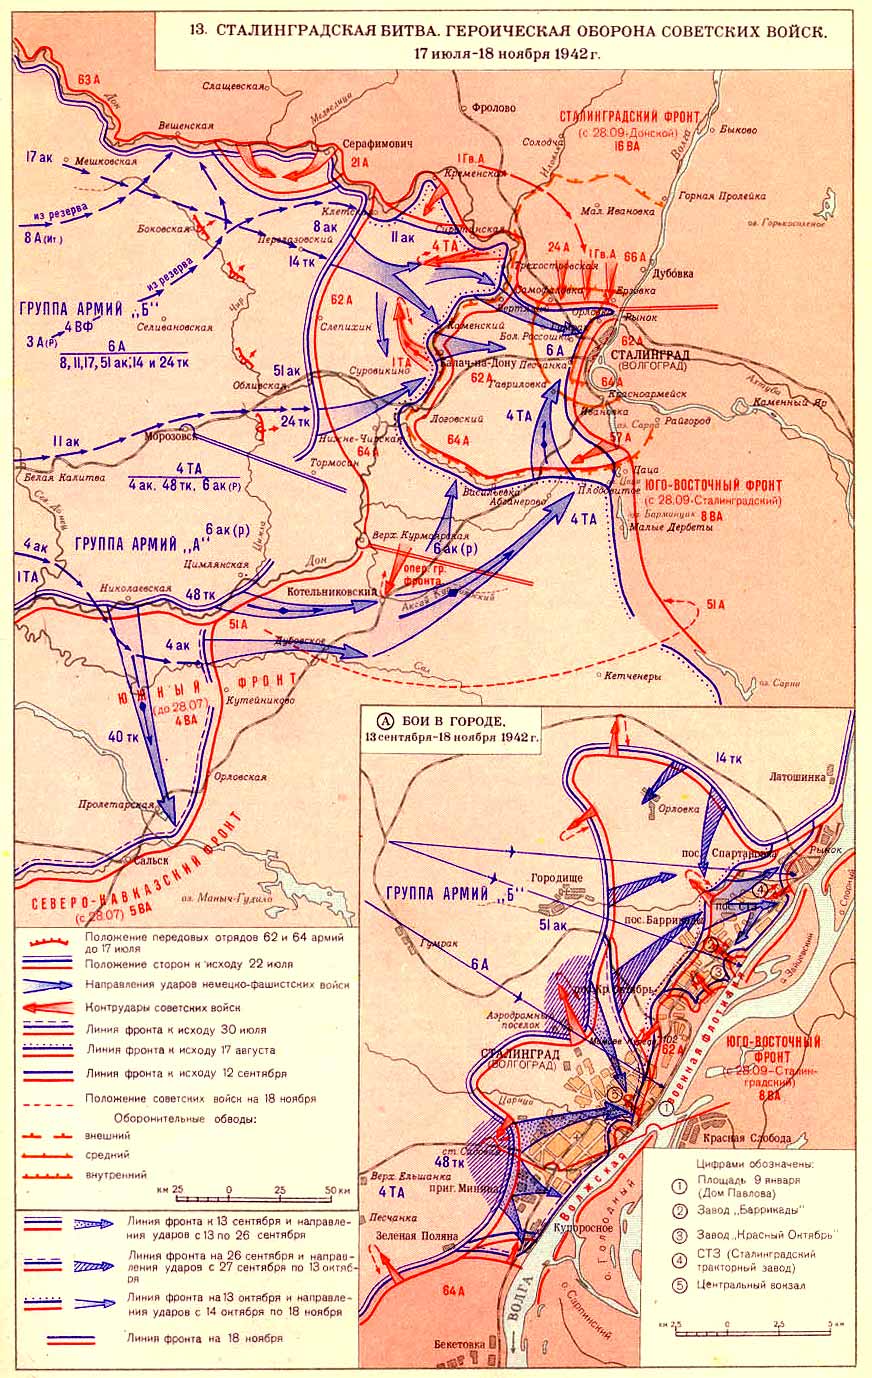 Сталинградская битва - оборона советских войск (17.07 - 18.11.1942)